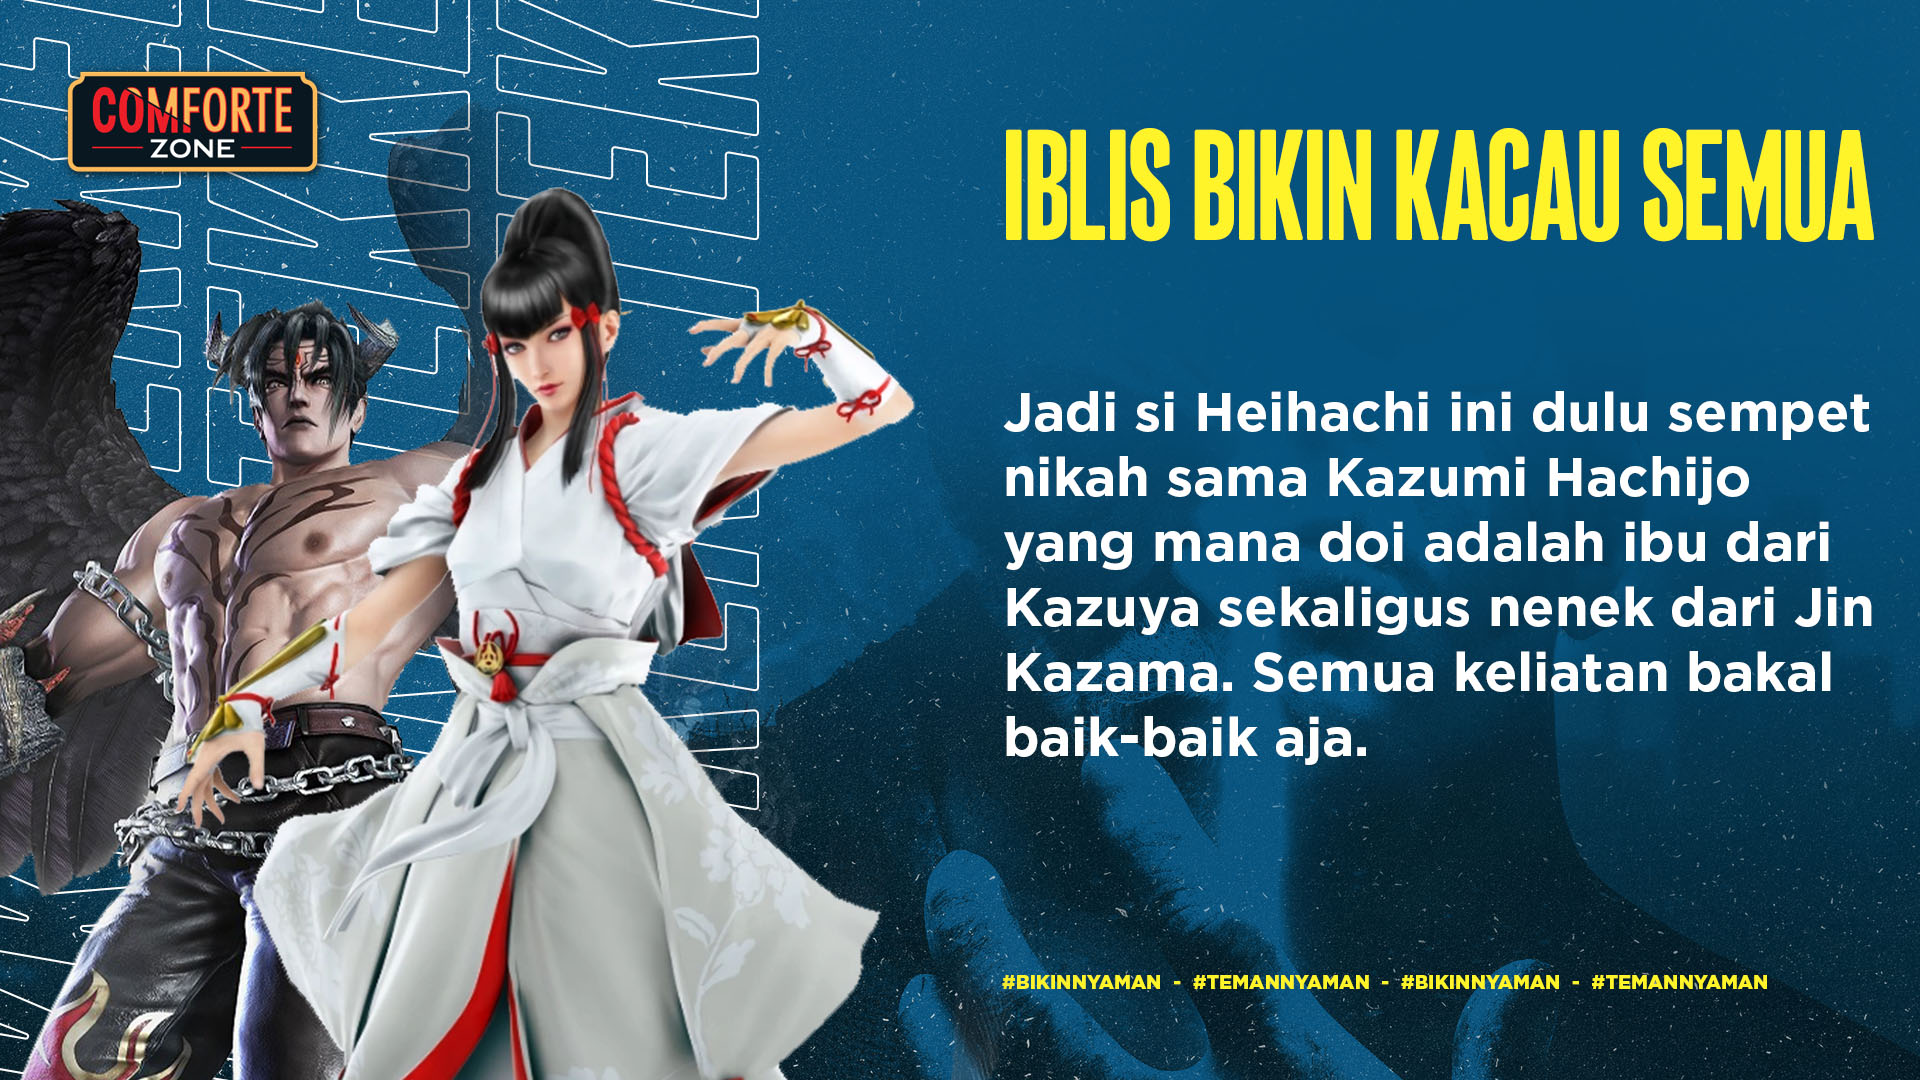 Jadi si Heihachi ini dulu sempet nikah sama Kazumi Hachijo yang mana doi adalah ibu dari Kazuya sekaligus nenek dari Jin Kazama. Semua keliatan bakal baik-baik aja, 